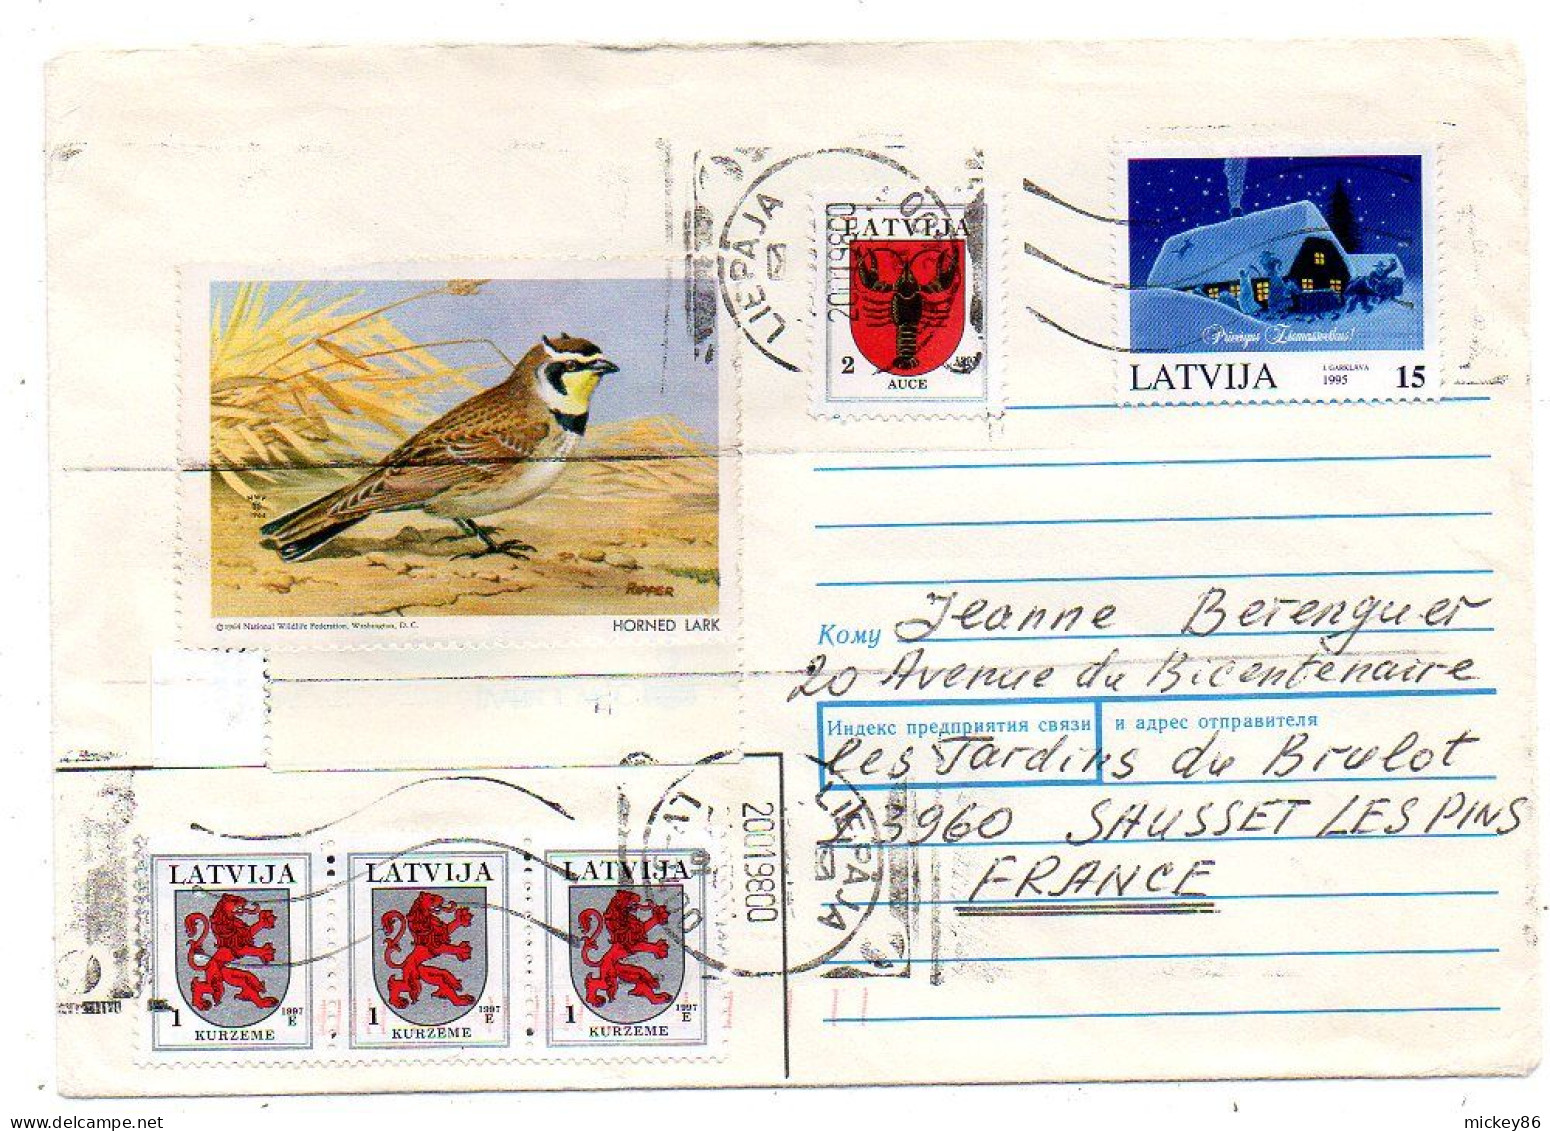 Lettonie -1998-- LIEPAJA  Pour SAUSSET LES BAINS-13 (France)..timbres (blason,voeux,oiseau)......cachet - Letland